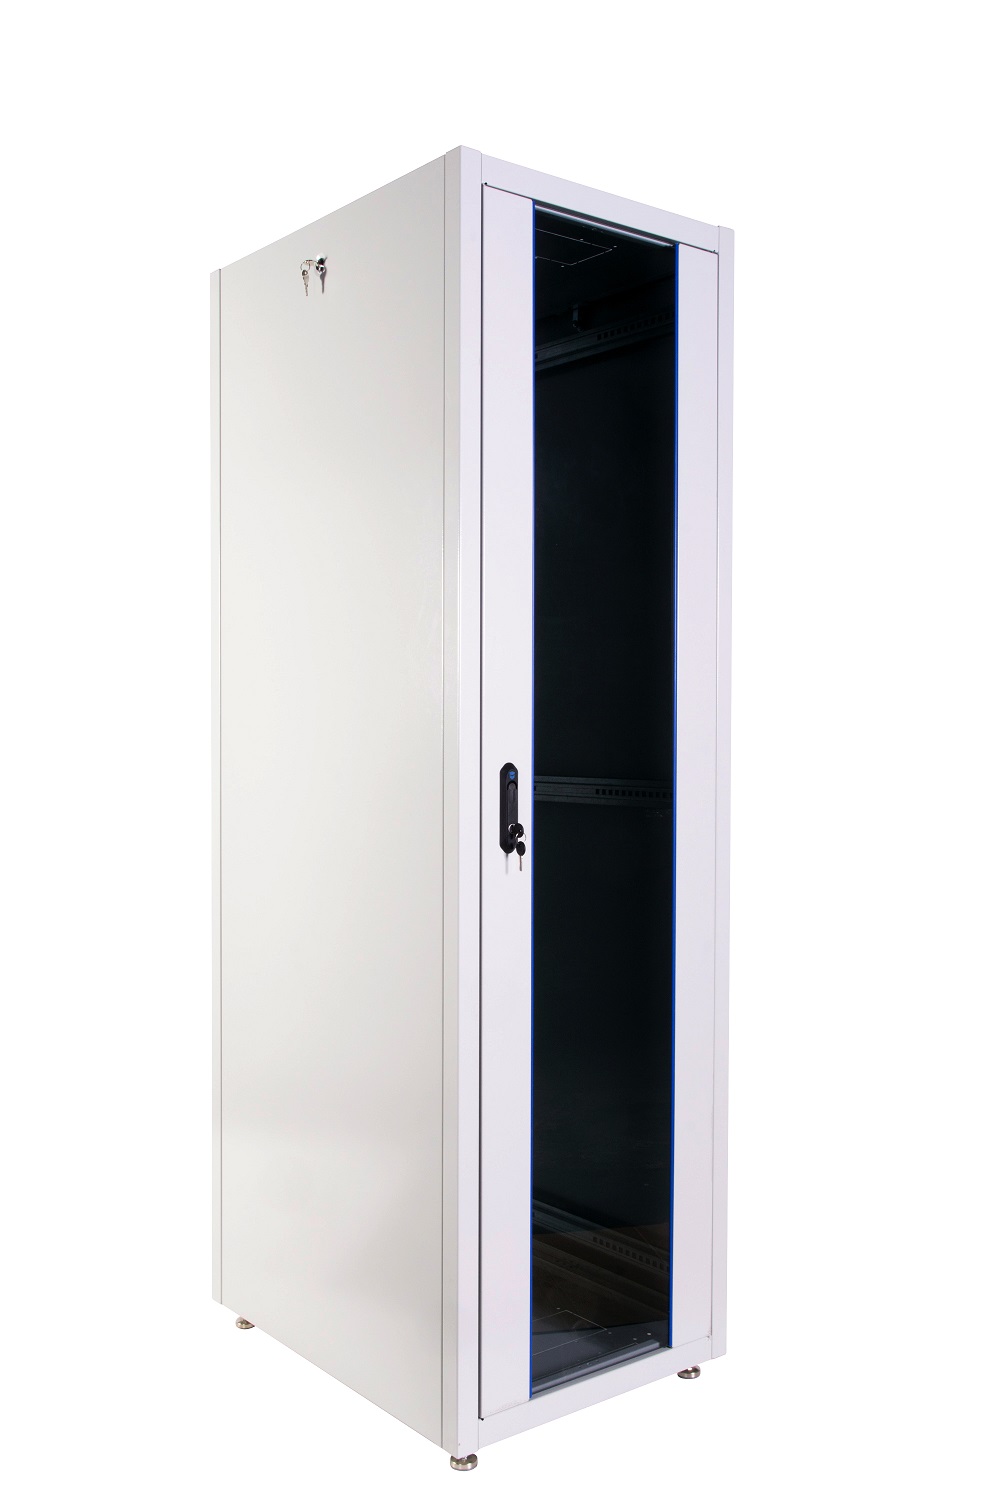  Купить Шкаф телекоммуникационный напольный ЭКОНОМ 48U (600 × 1000) дверь стекло, дверь металл